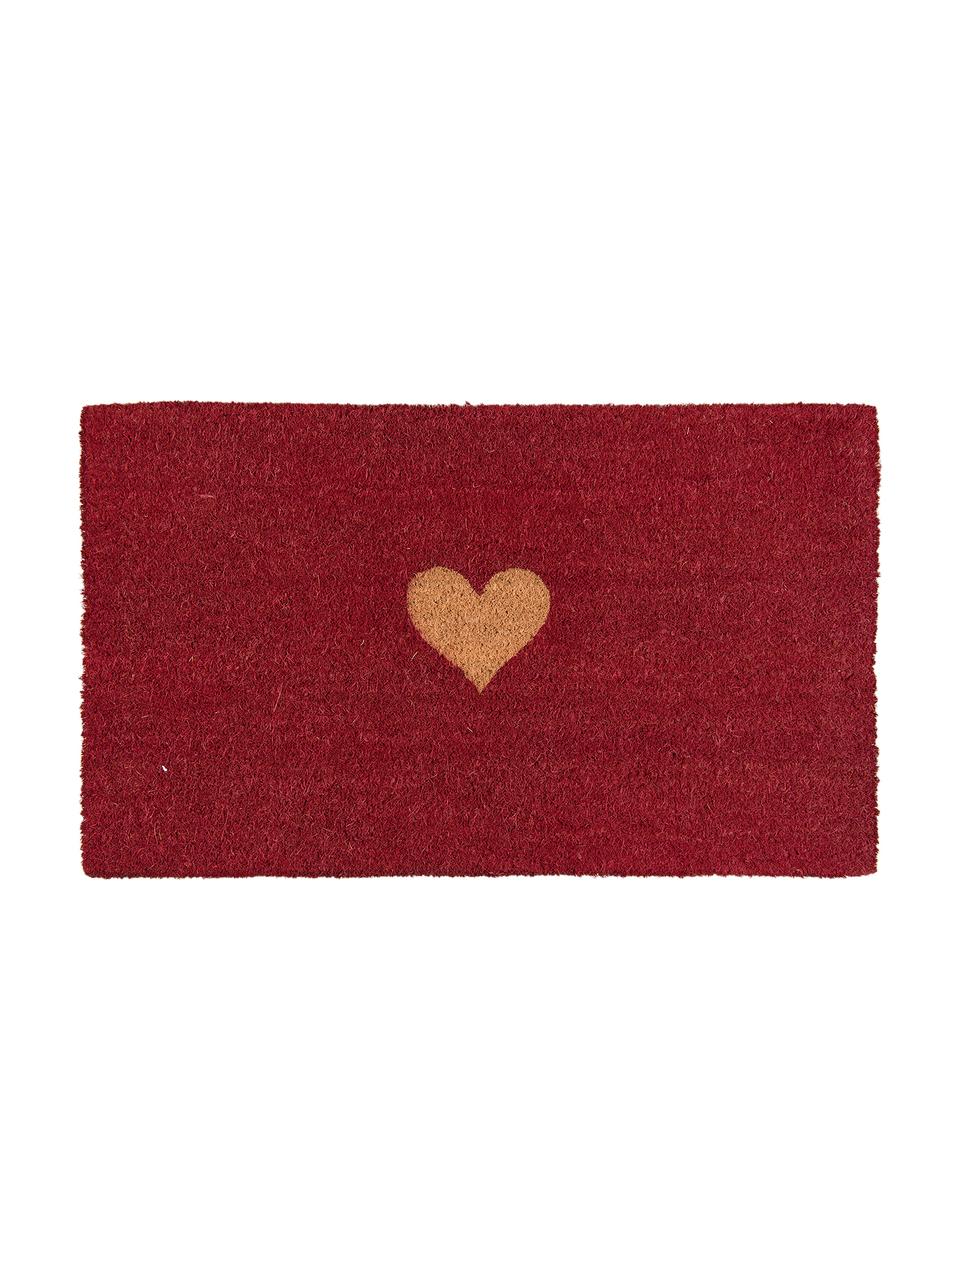 Fußmatte Heart, Oberseite: Kokosfaser, Unterseite: PVC, Rot, Braun, B 45 x L 75 cm